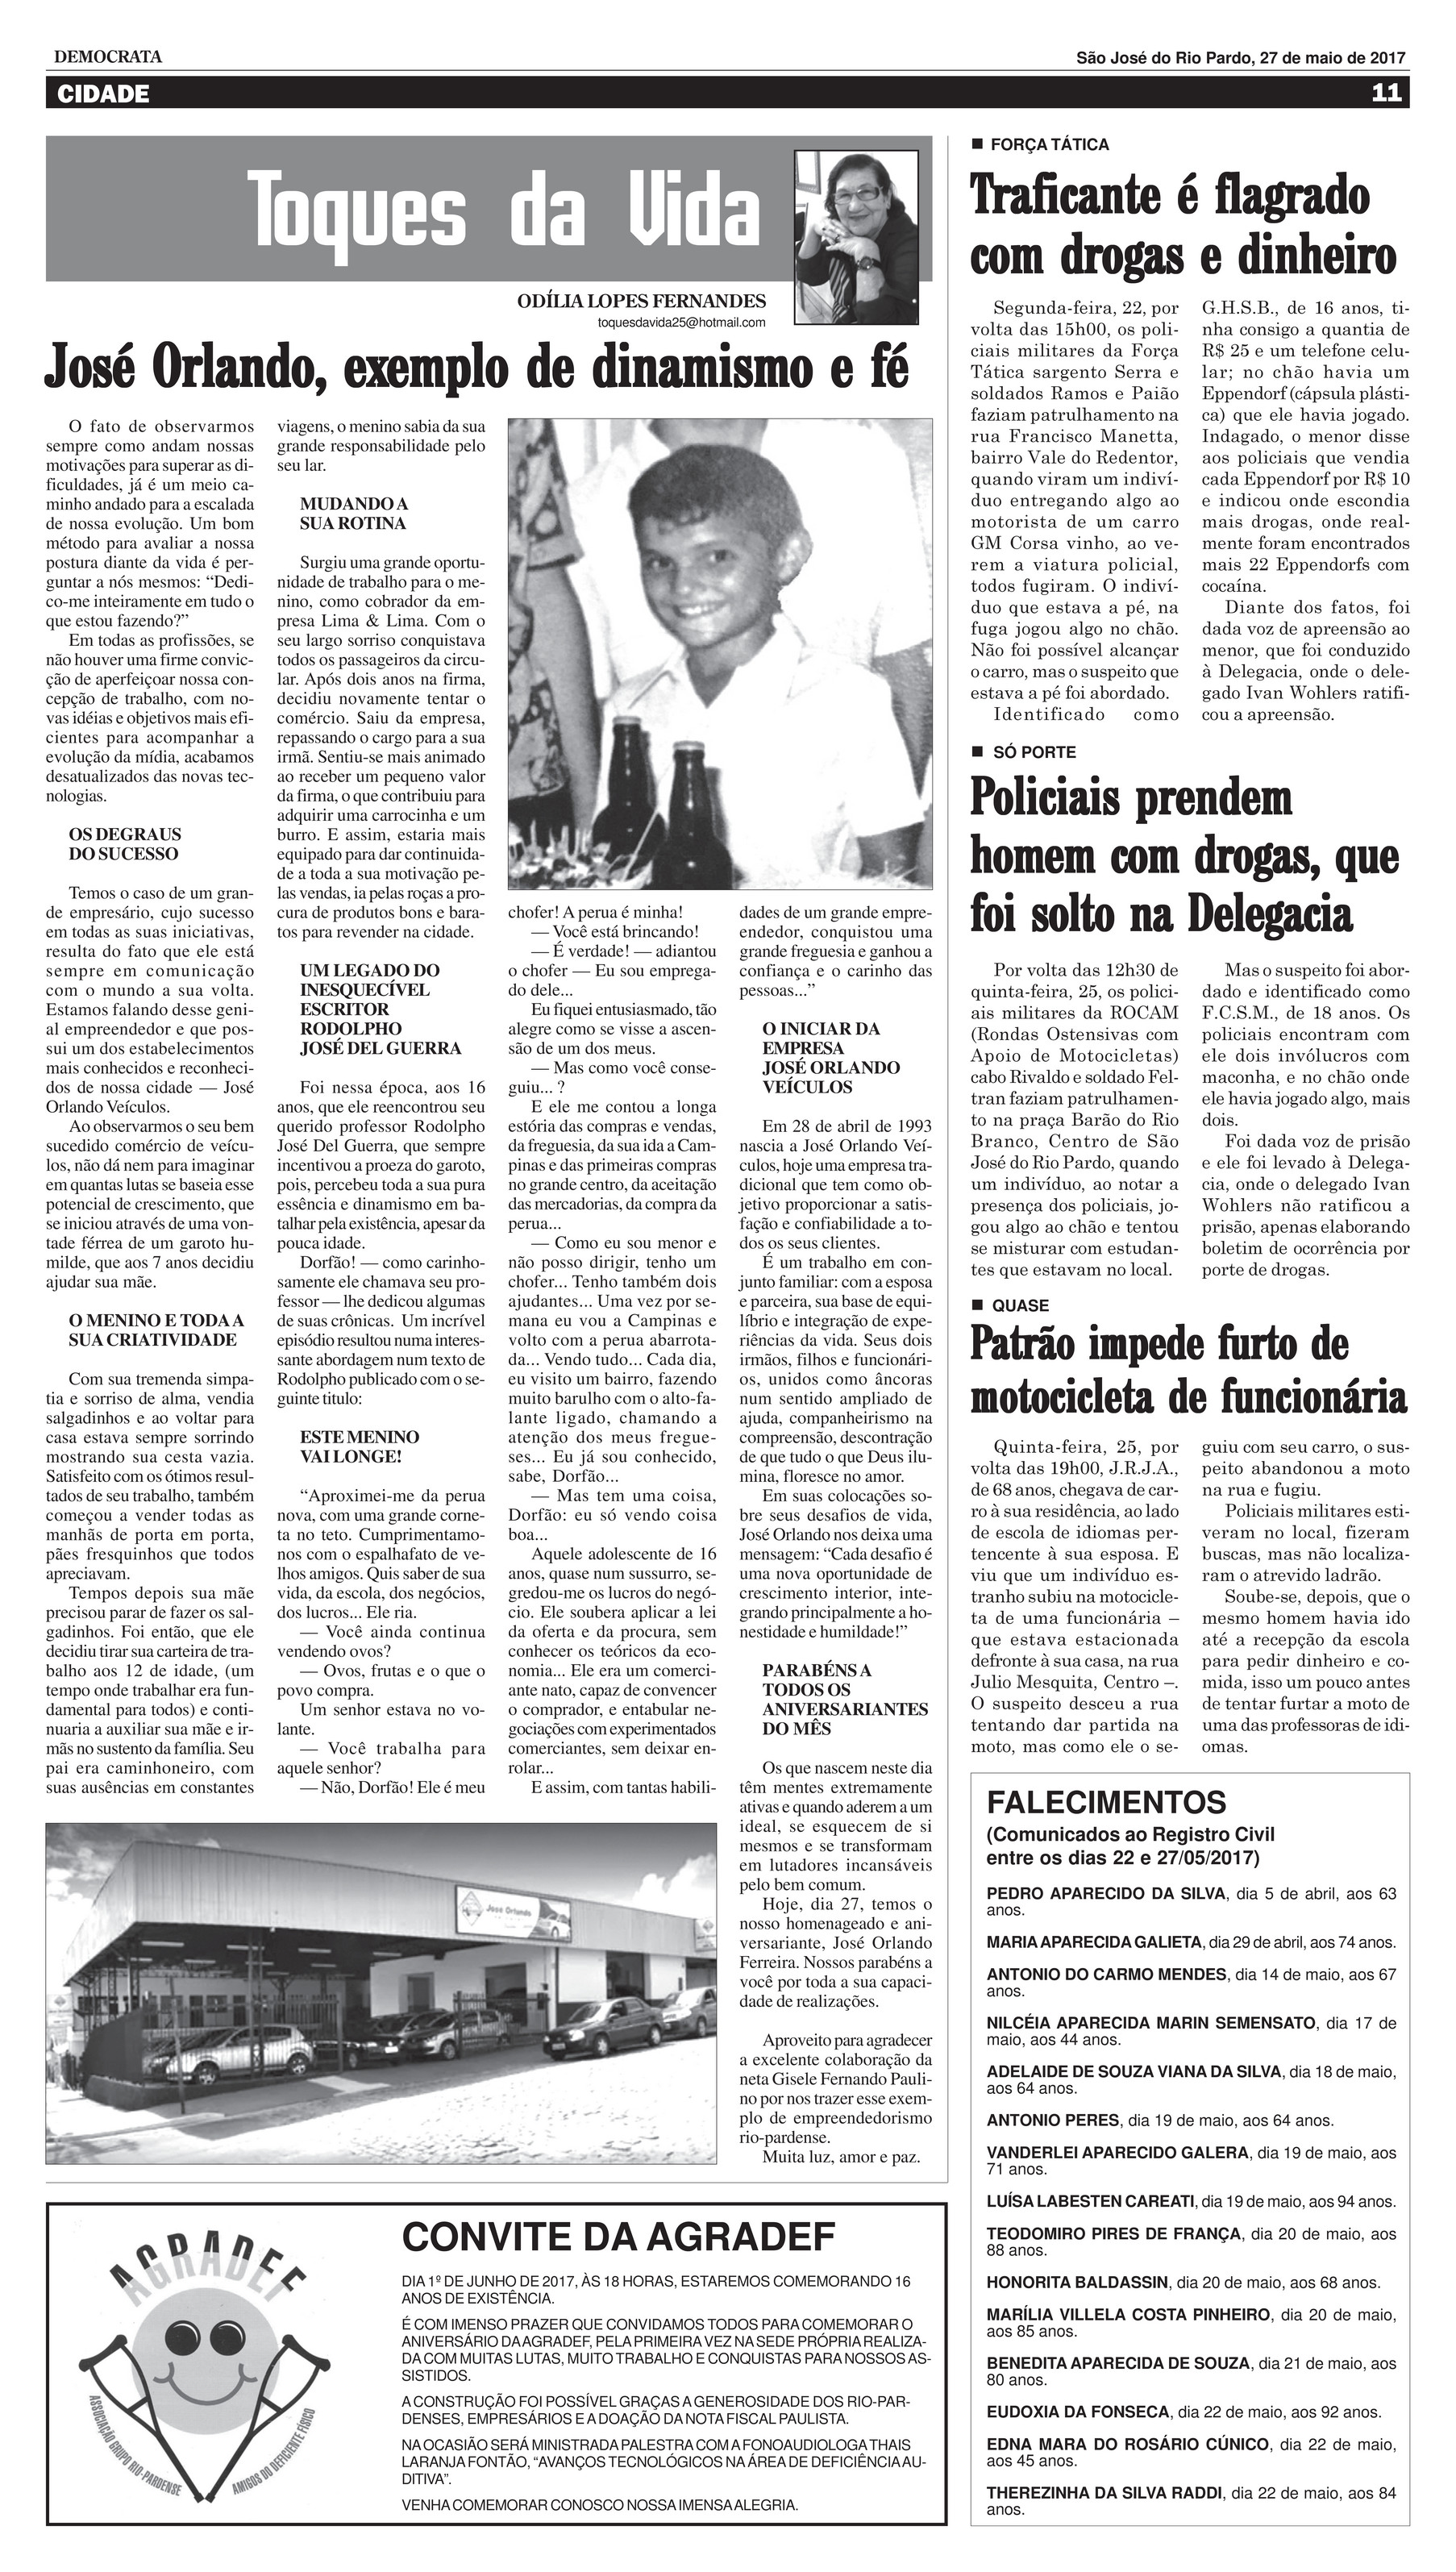 jornaldemocrata - Edição 1781_6_8_2023 - Página 6-7 - Created with  Publitas.com